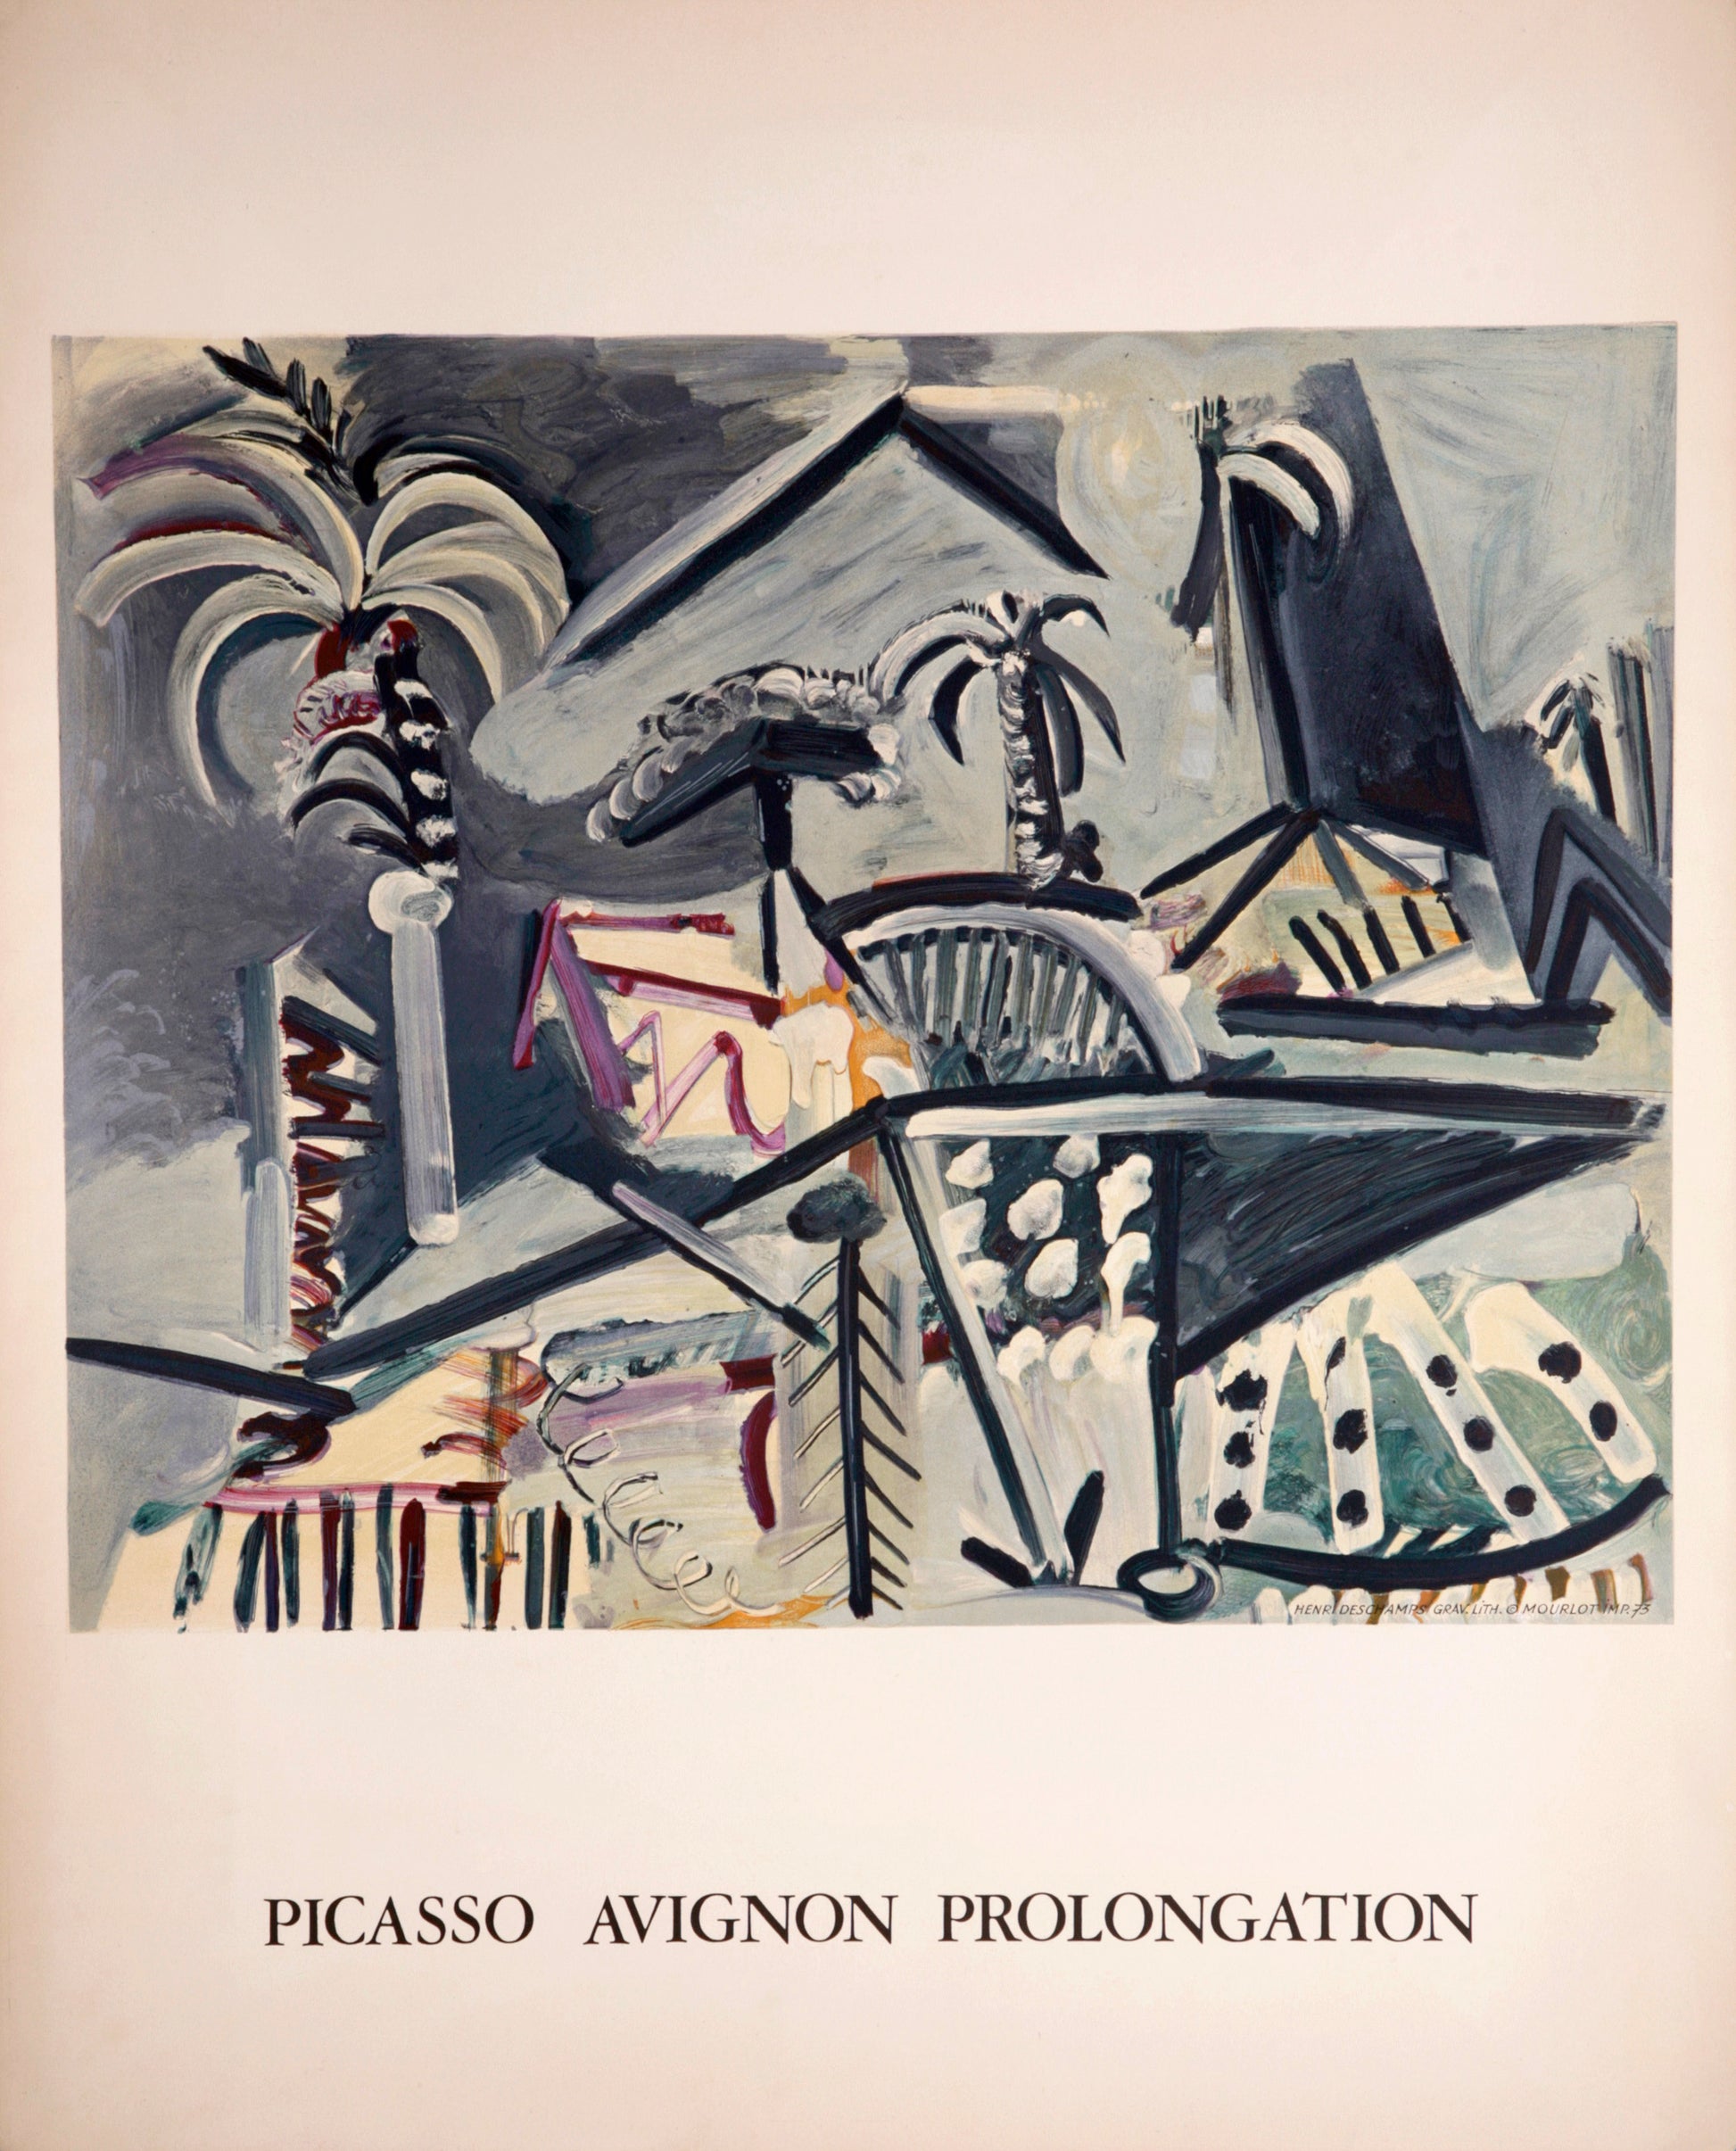 Picasso Avignon Prolongation by Pablo Picasso - Mourlot Editions - Fine_Art - Poster - Lithograph - Wall Art - Vintage - Prints - Original